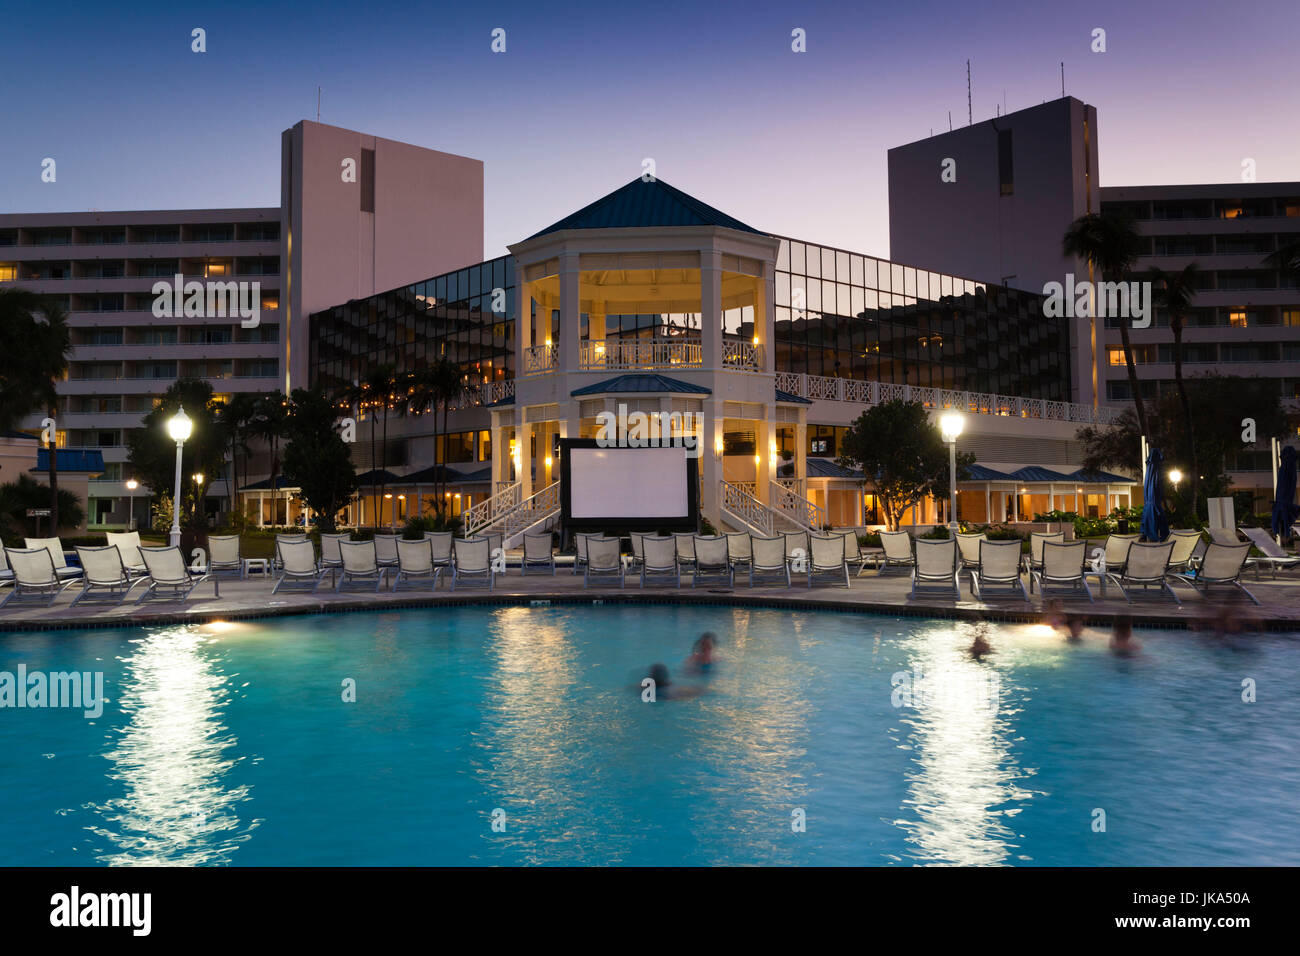 Bahamas, New Providence Island, Nassau, Cable Beach, Sheraton Cable Beach Resort, dusk Stock Photo